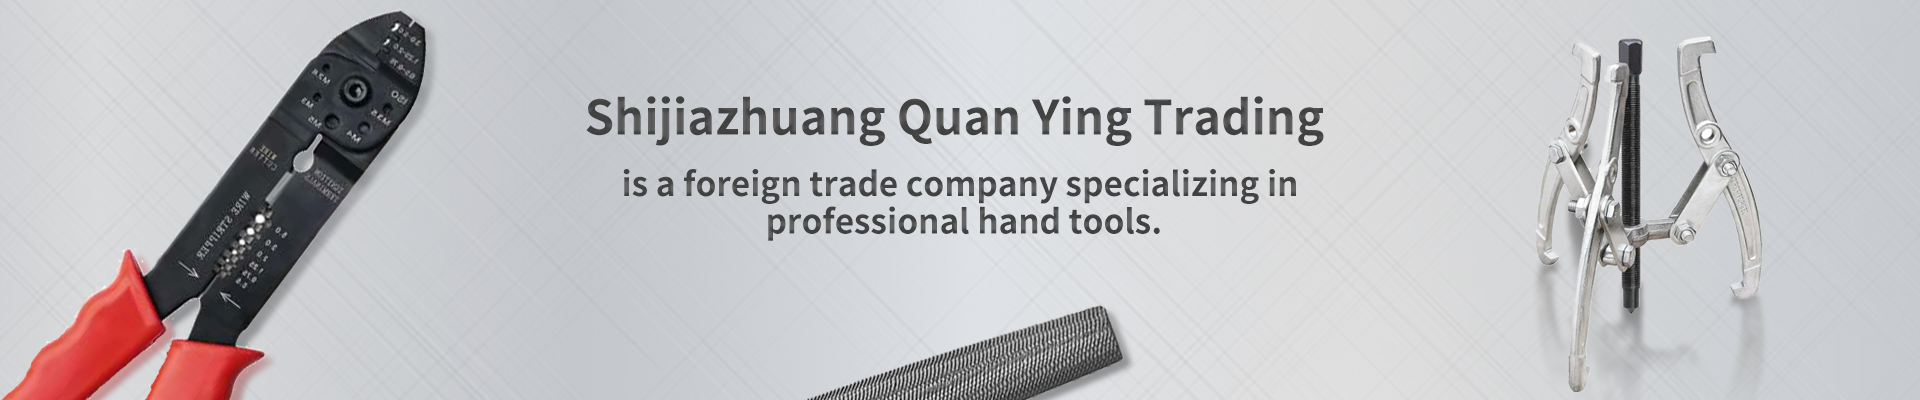 Shijiazhuang Quan Ying Trading Co., Ltd.